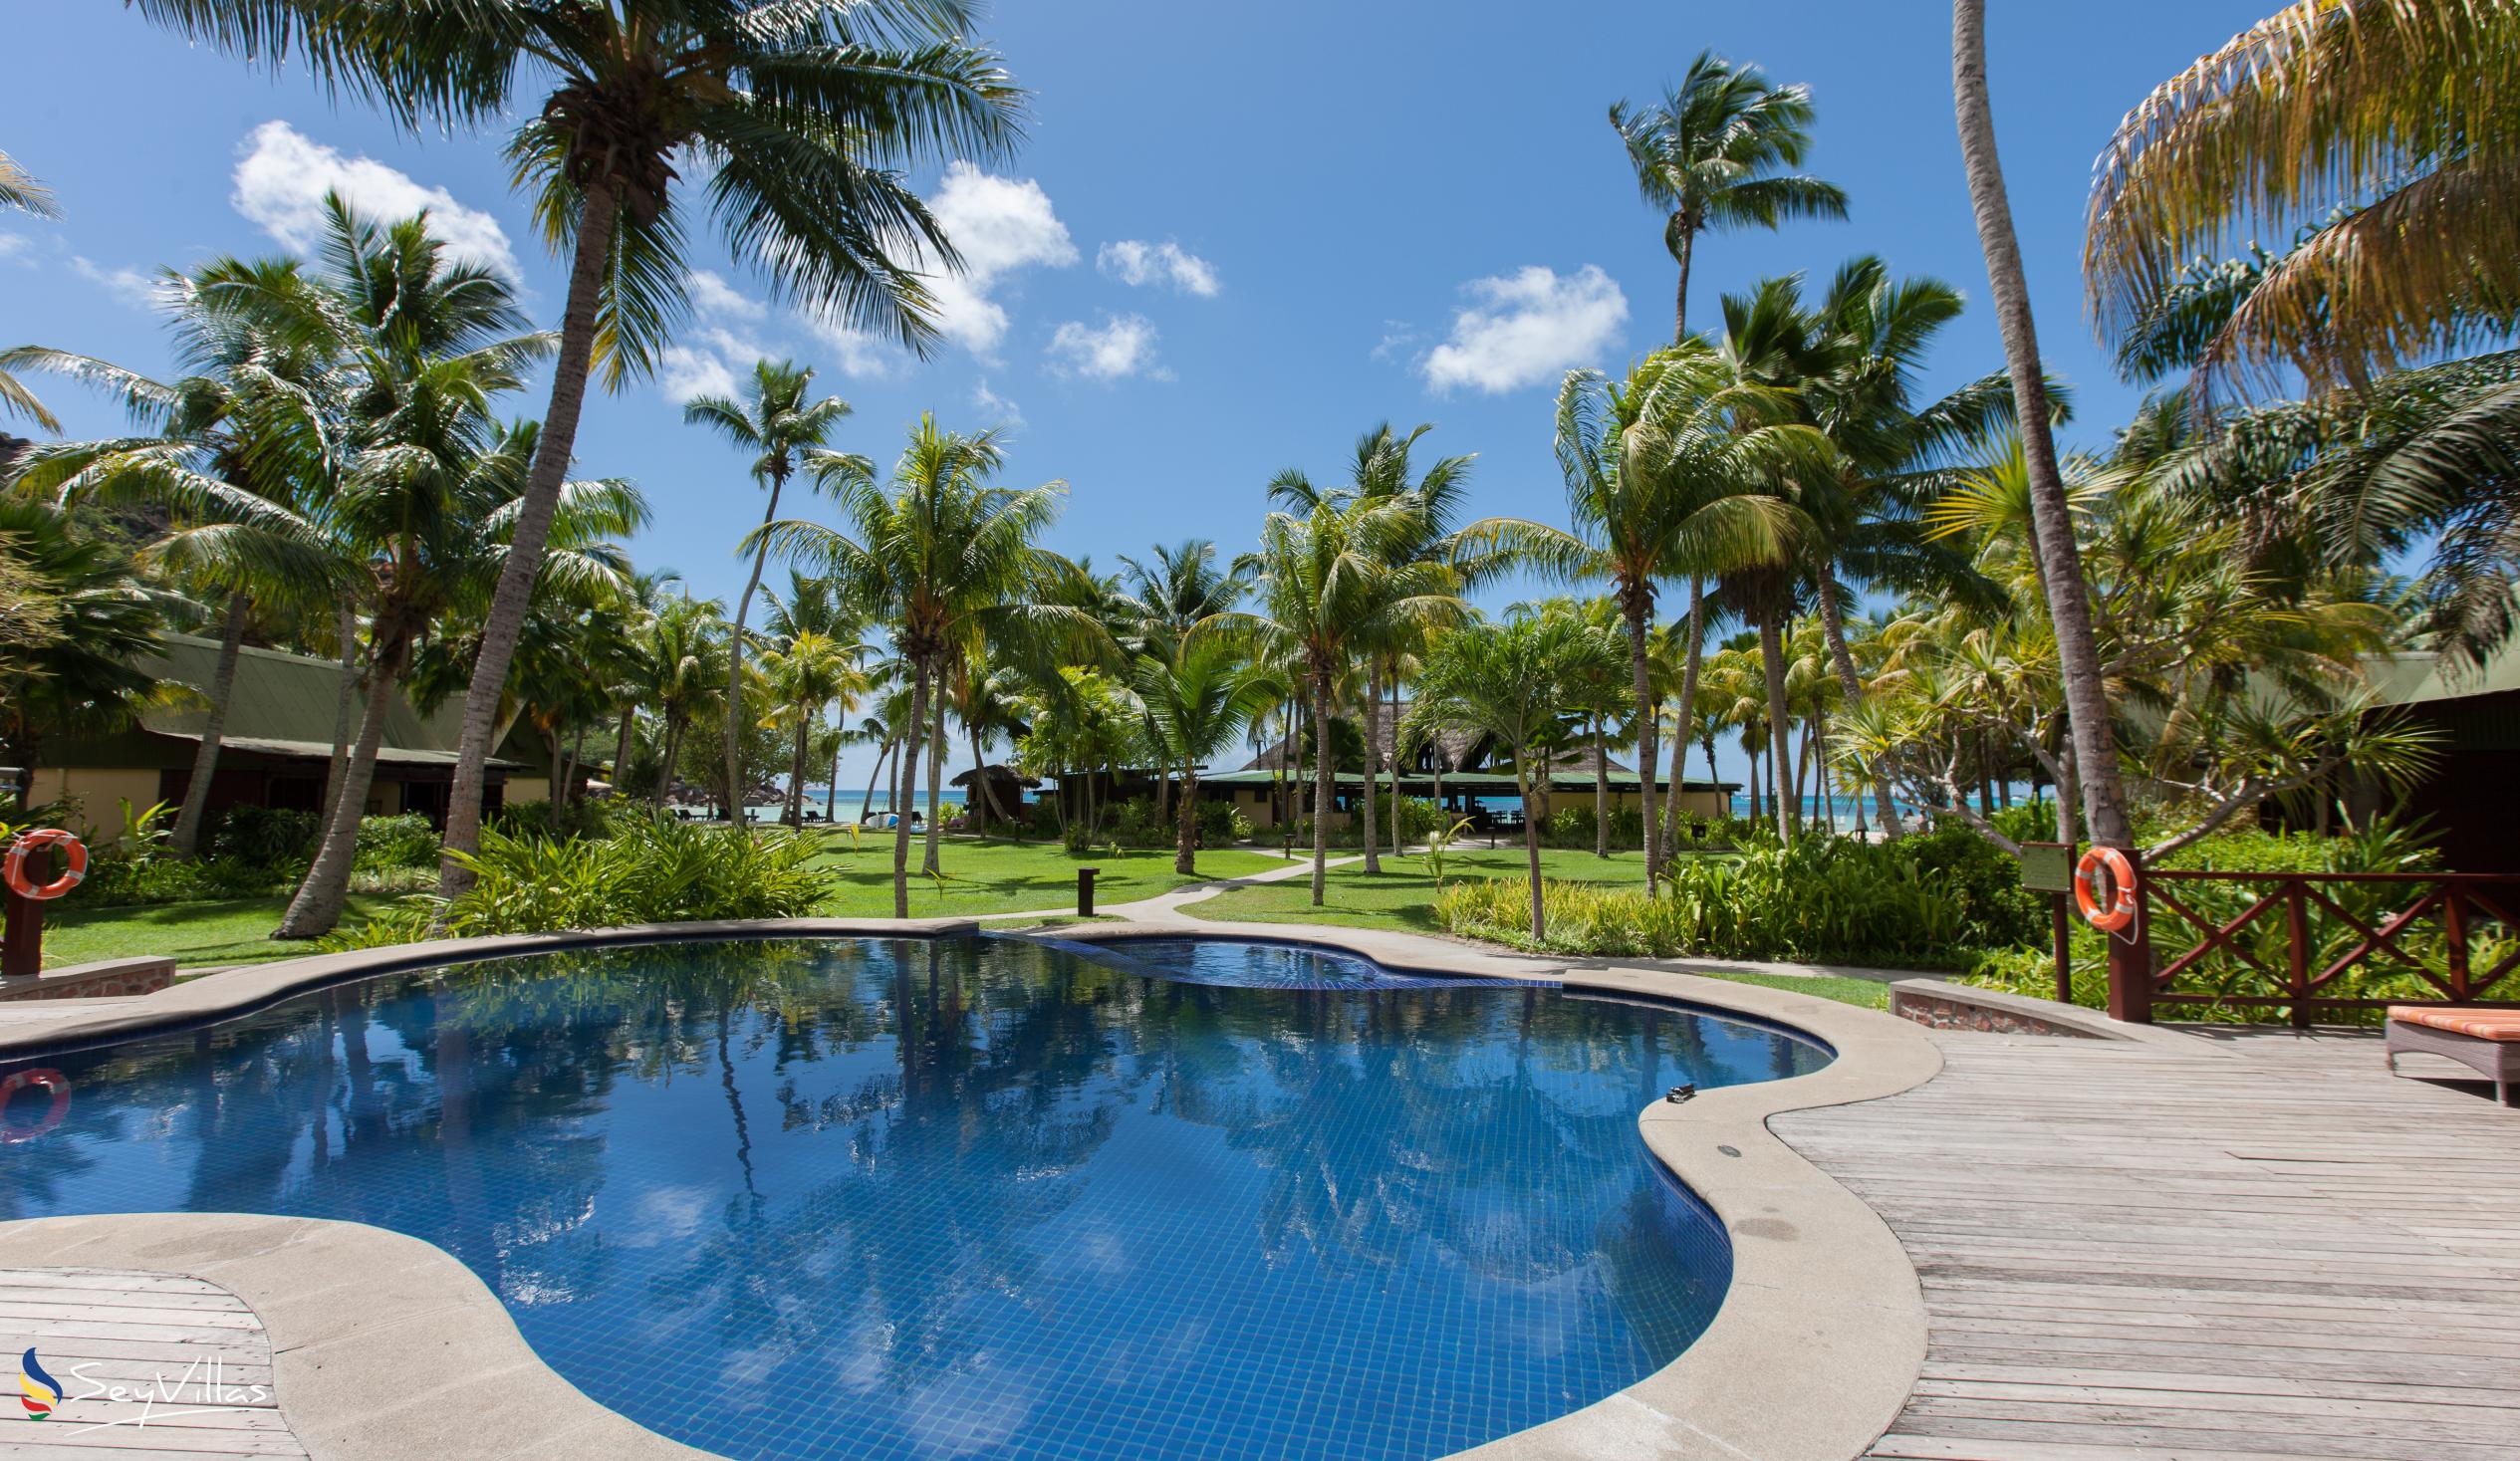 Foto 19: Paradise Sun Hotel - Aussenbereich - Praslin (Seychellen)